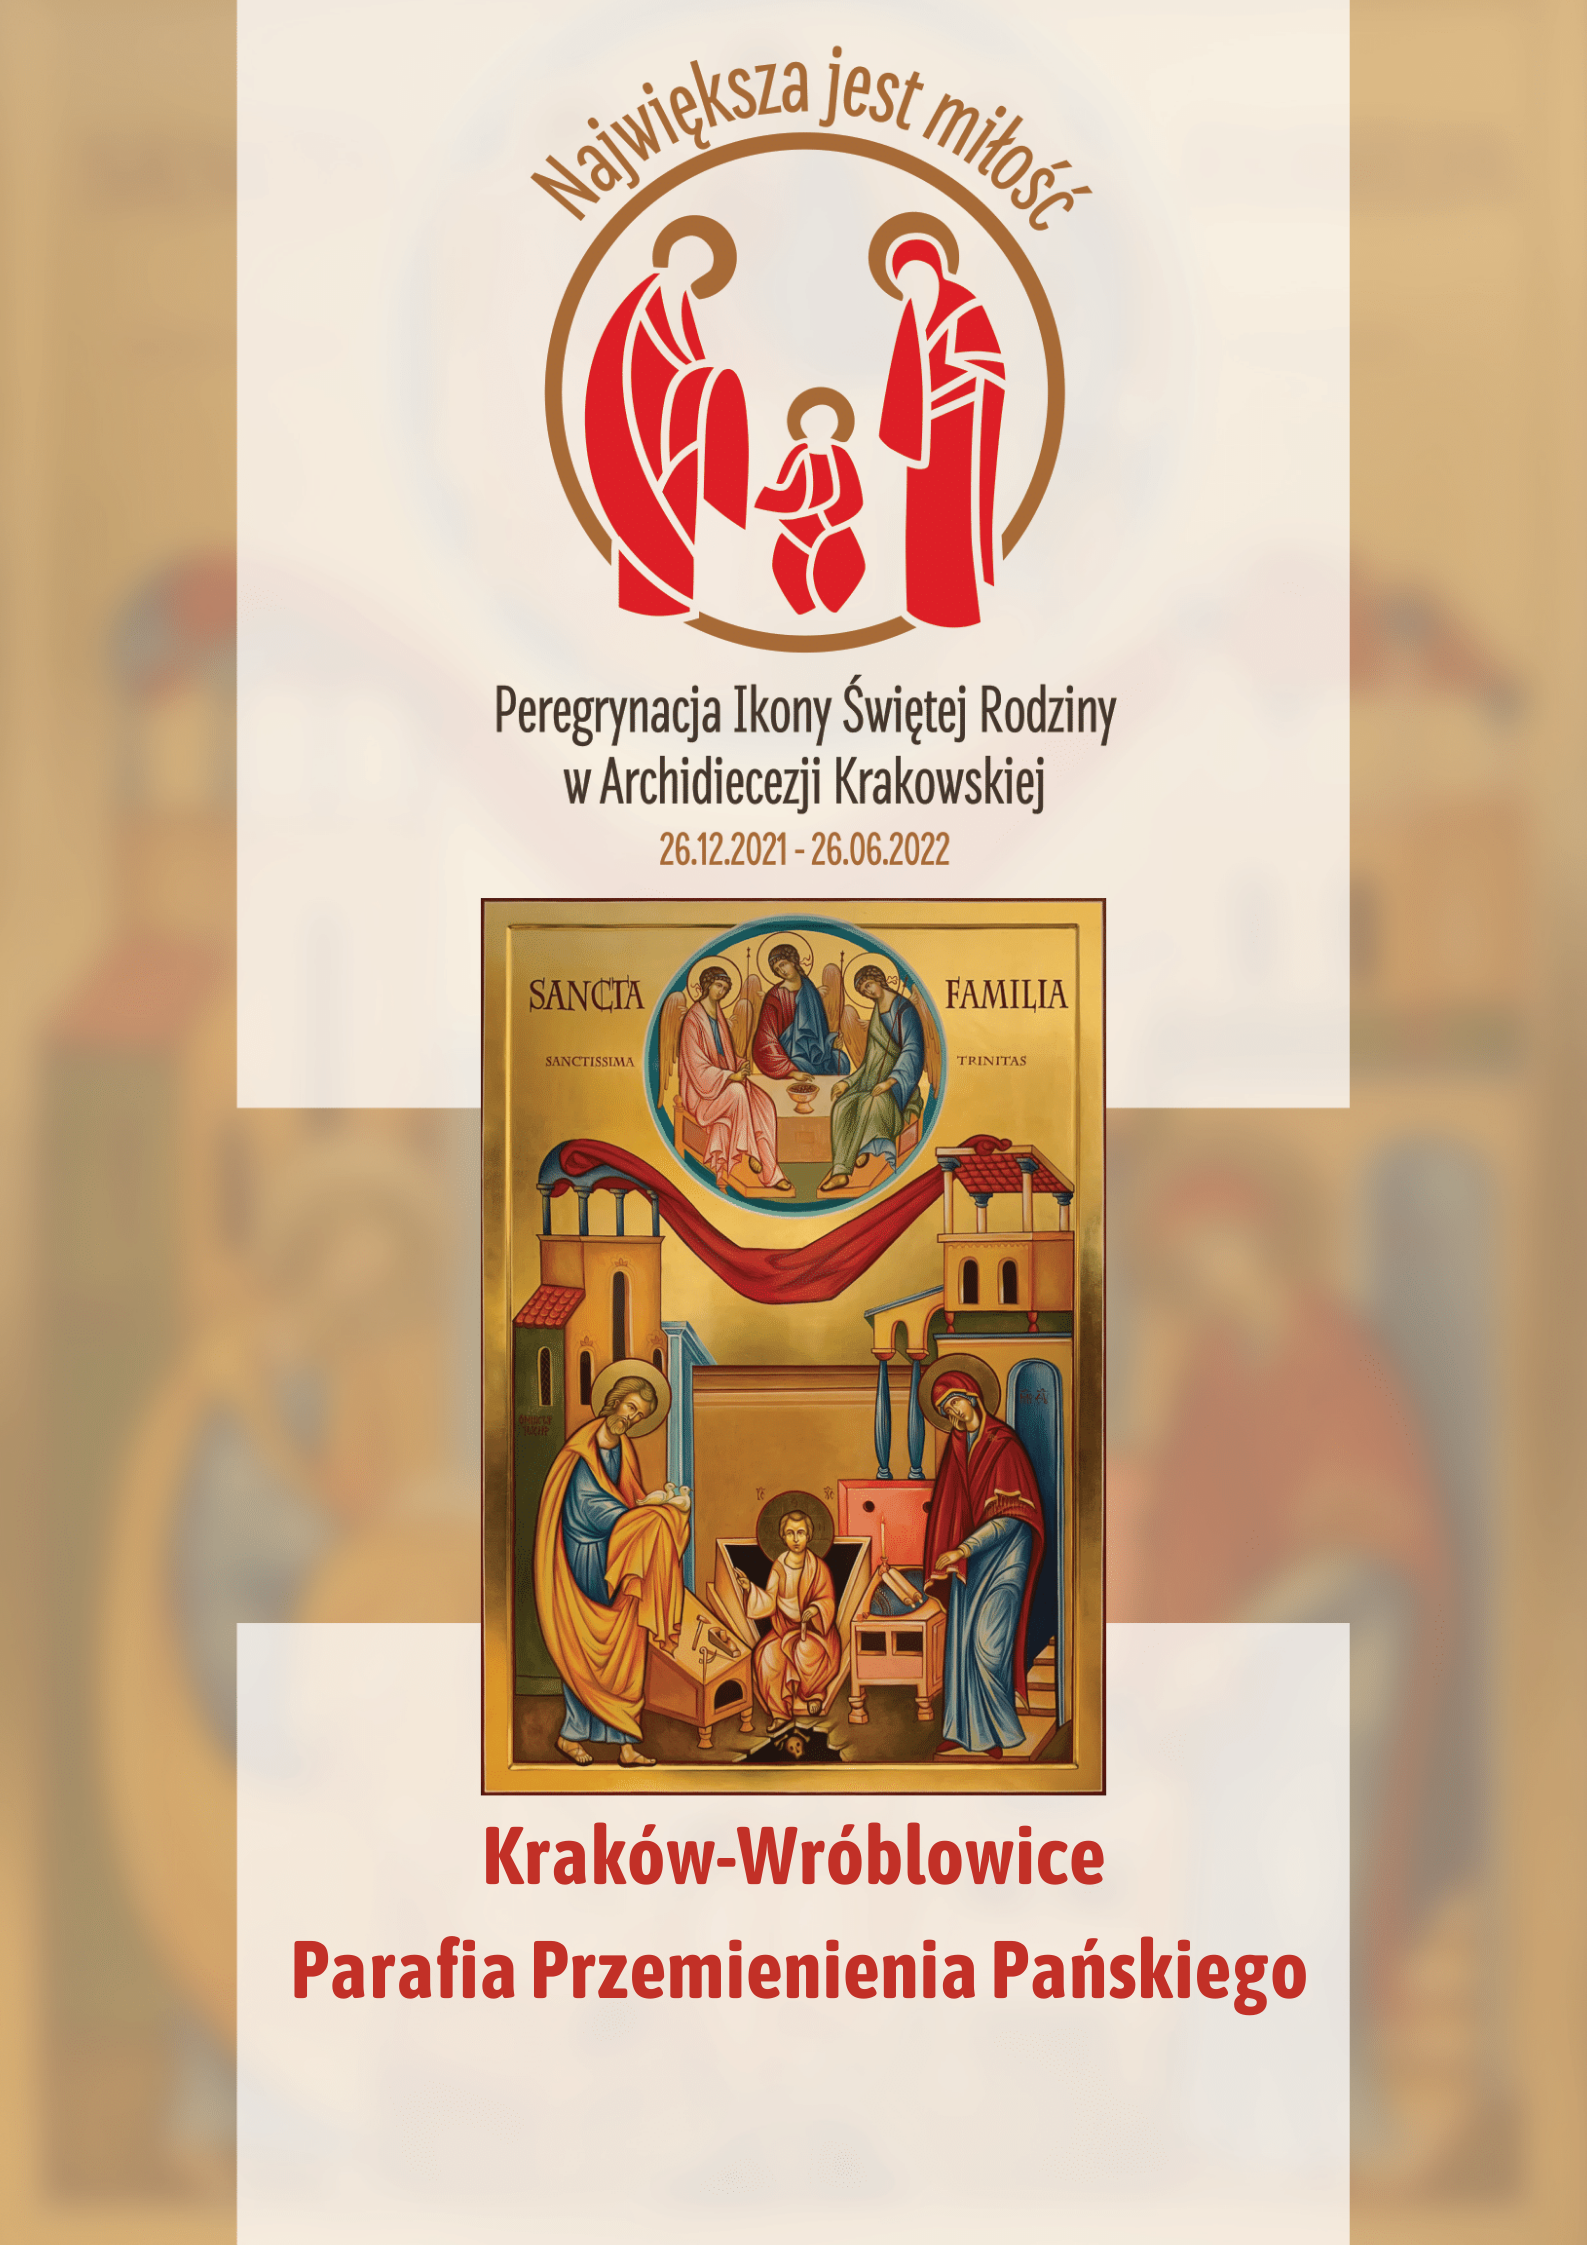 Ikona Świętej Rodziny w parafii Przemienienia Pańskiego w Krakowie-Wróblowicach